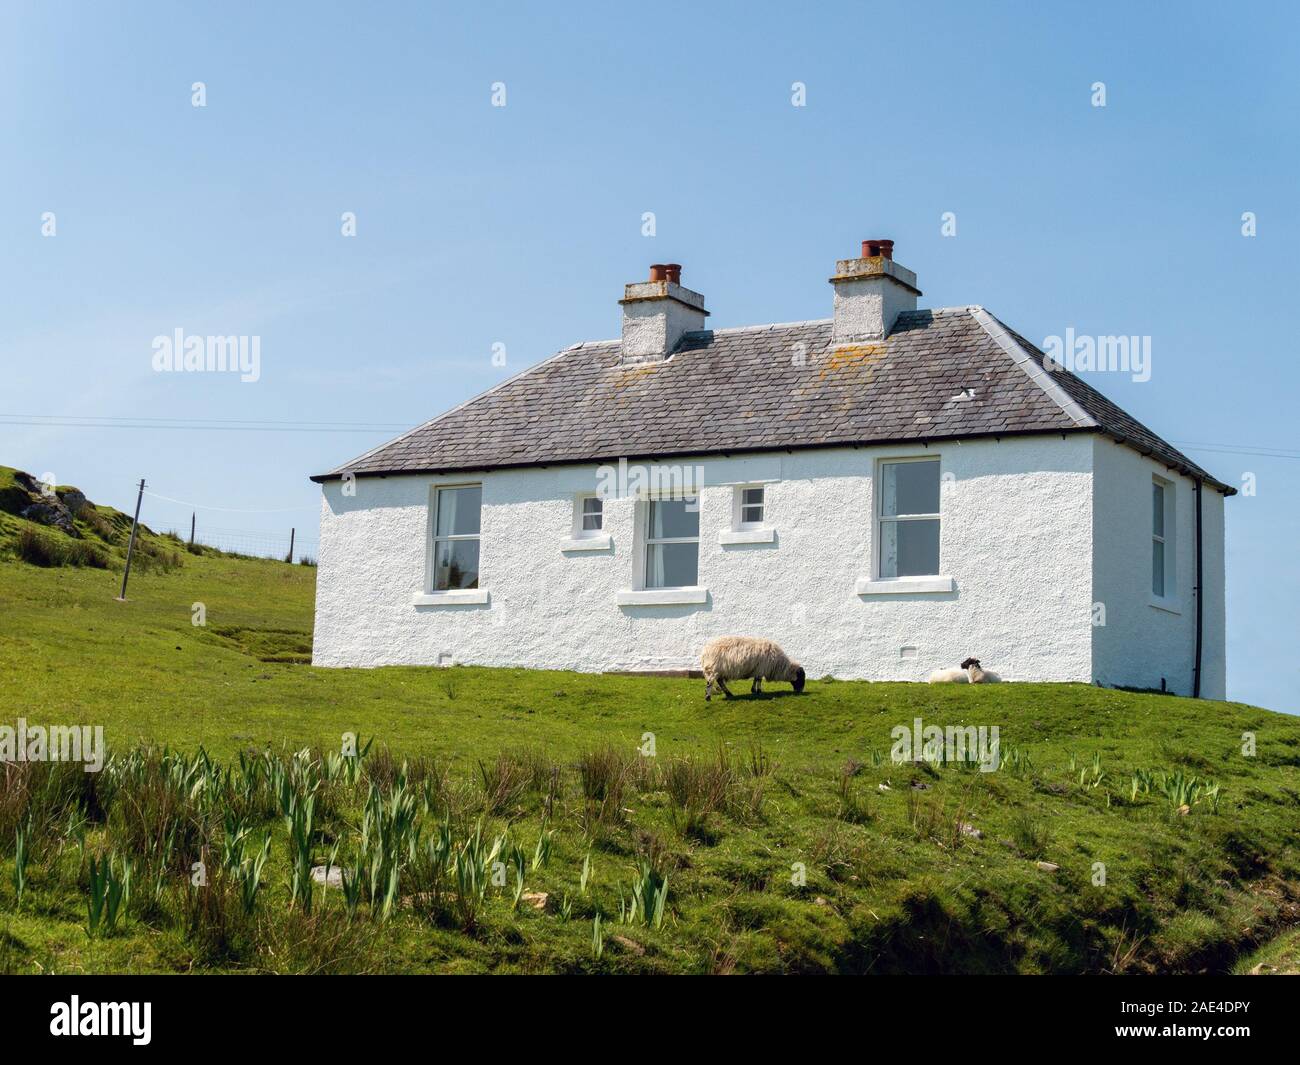 Pebbledashed and whitewashed Balerominmore holiday cottage on the Isle of Colonsay, Scotland, UK Stock Photo